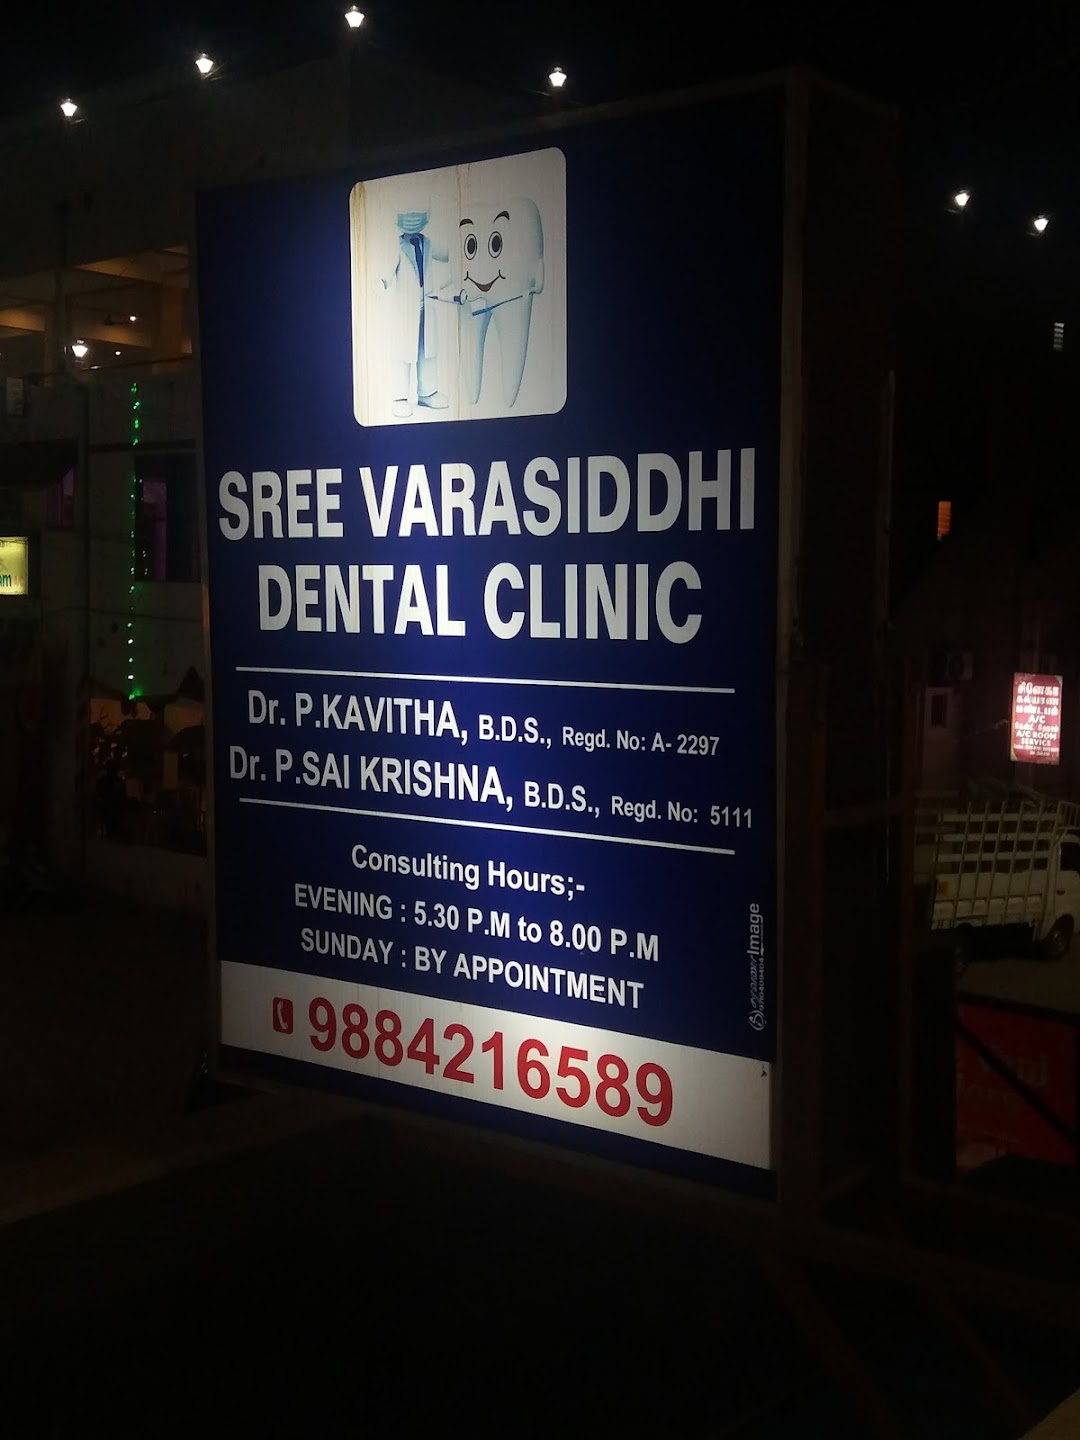 Sree Varasiddhi Dental Clinic